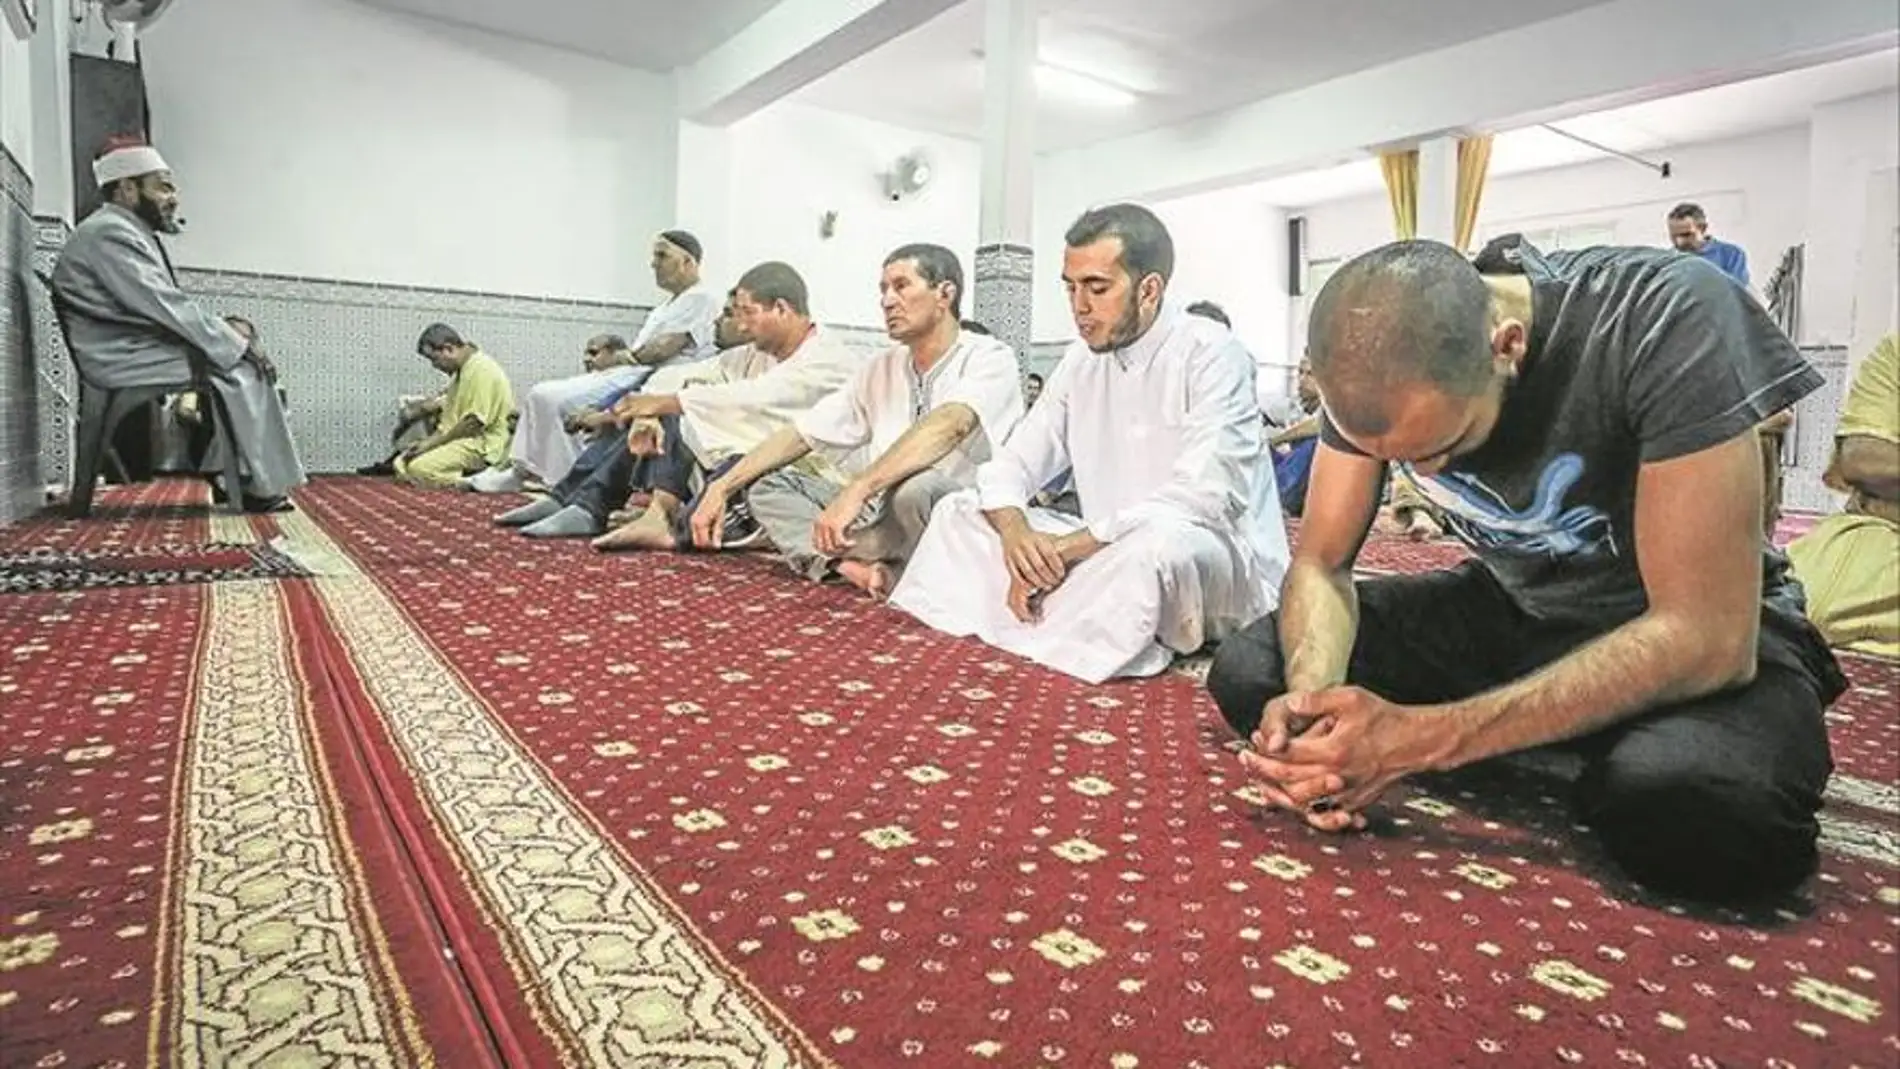 La Comisión Islámica en Extremadura insta a los musulmanes a celebrar con responsabilidad la Fiesta Fin del Ramadán